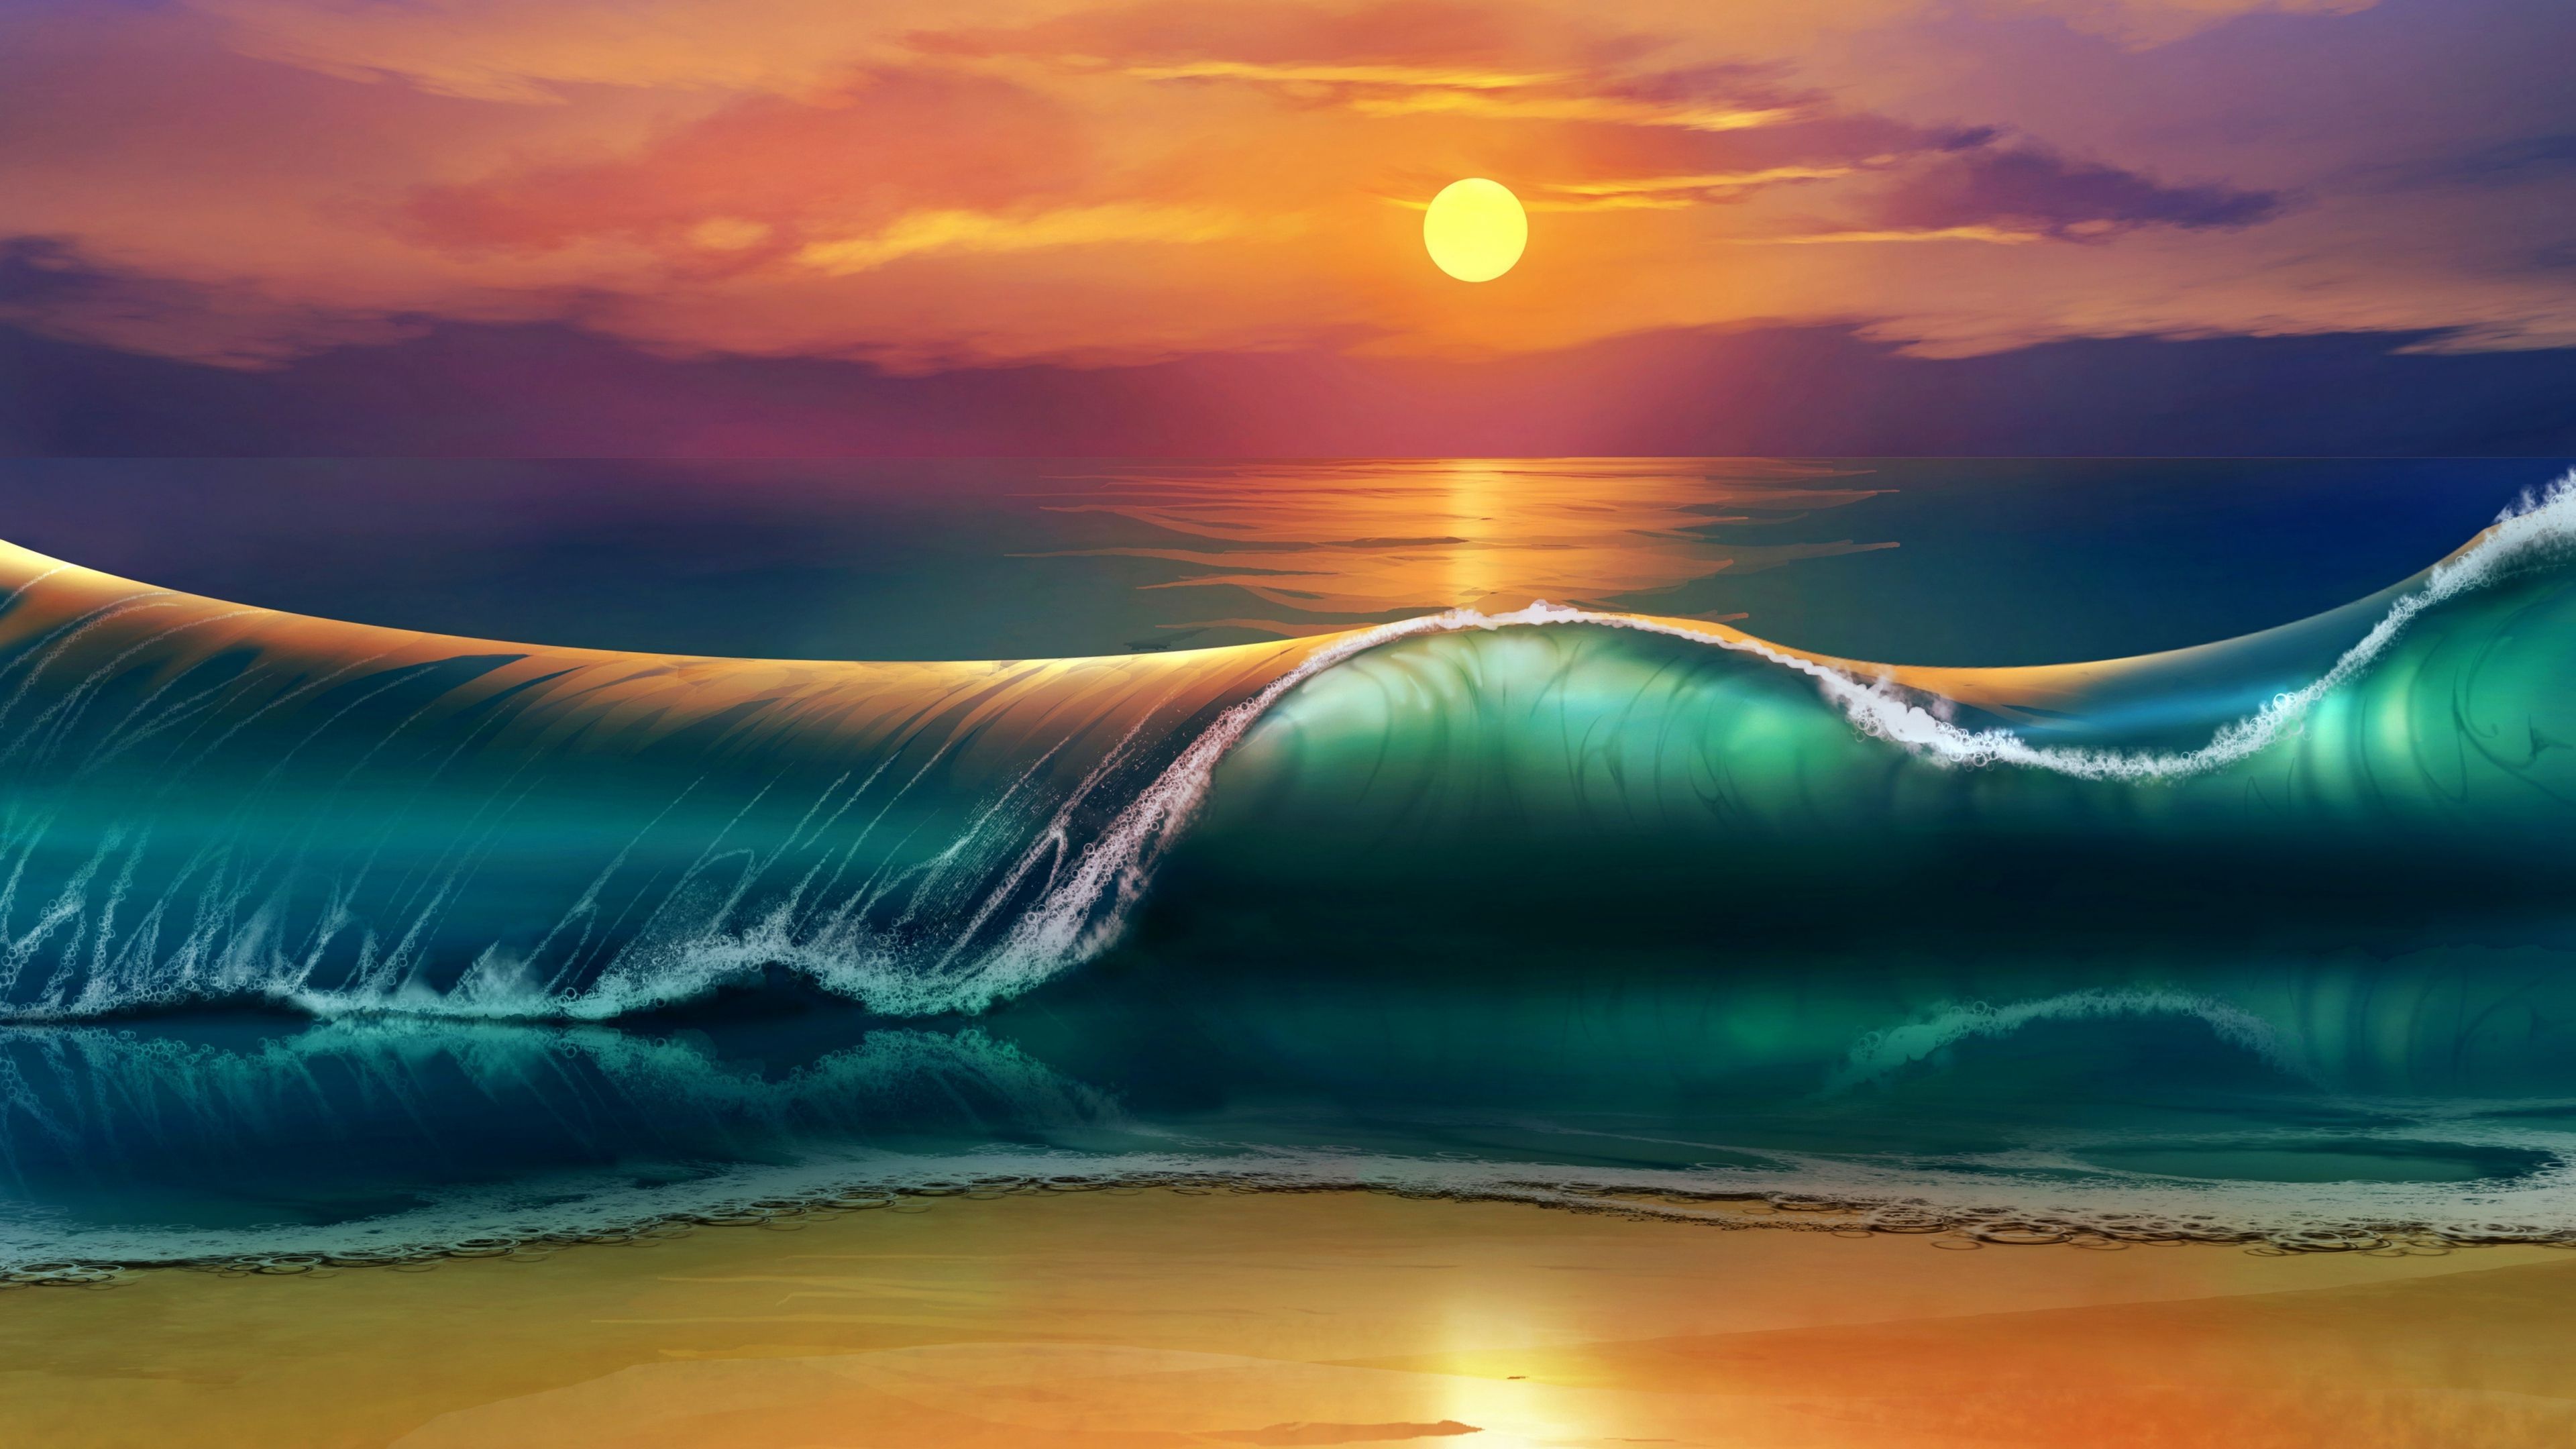 Beach Sunset Waves Desktop Wallpaper Free Beach Sunset Waves Desktop Background